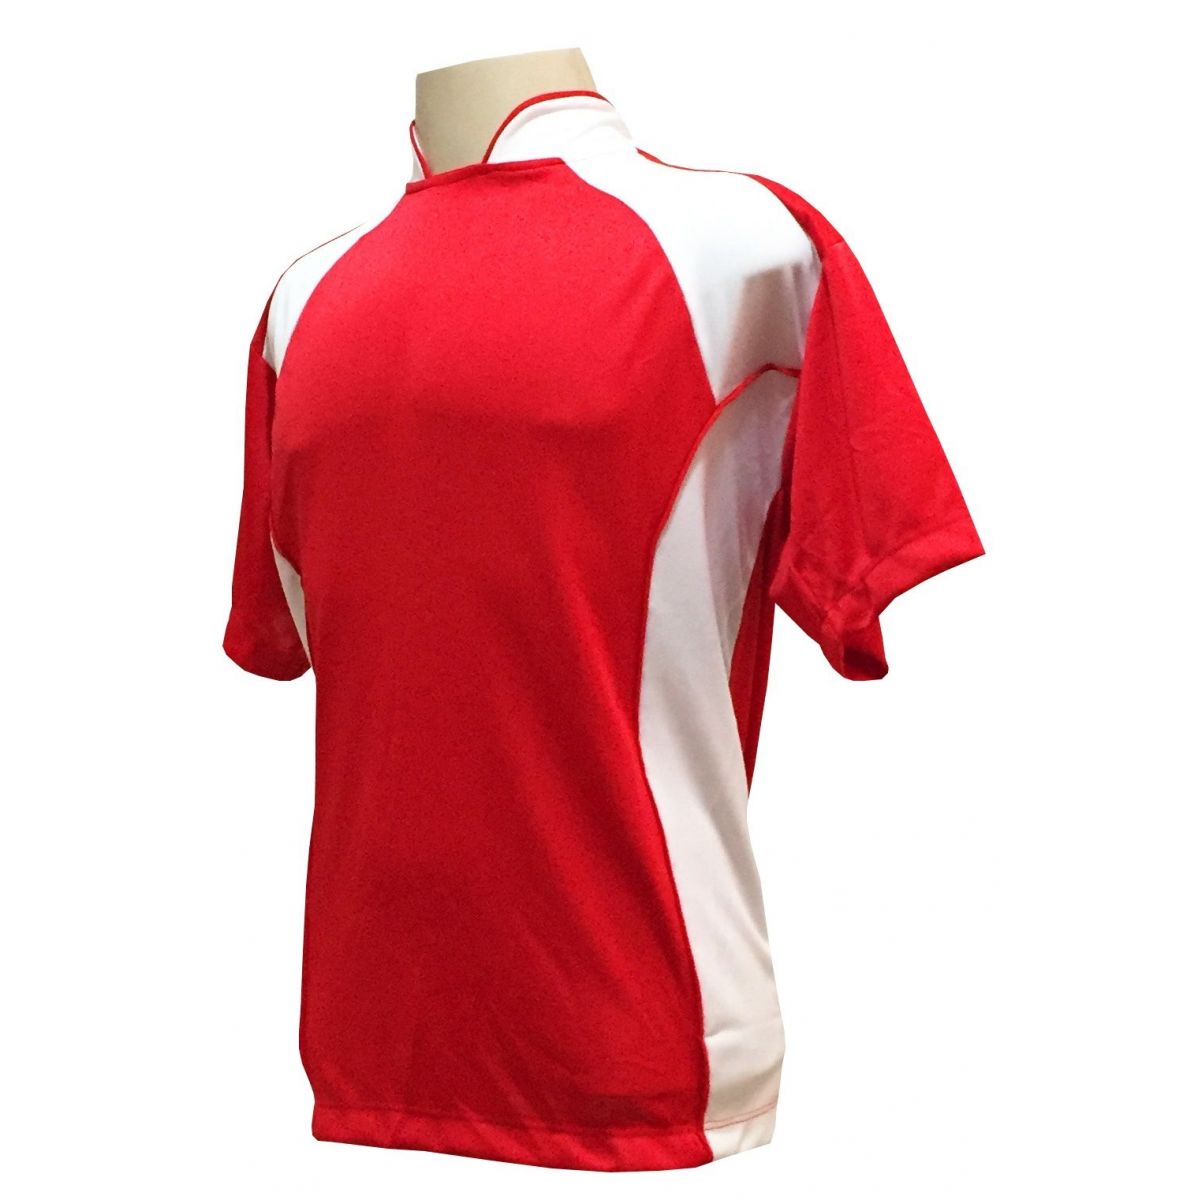 Uniforme Esportivo com 14 camisas modelo Suécia Vermelho/Branco + 14 calções modelo Madrid Branco + Brindes